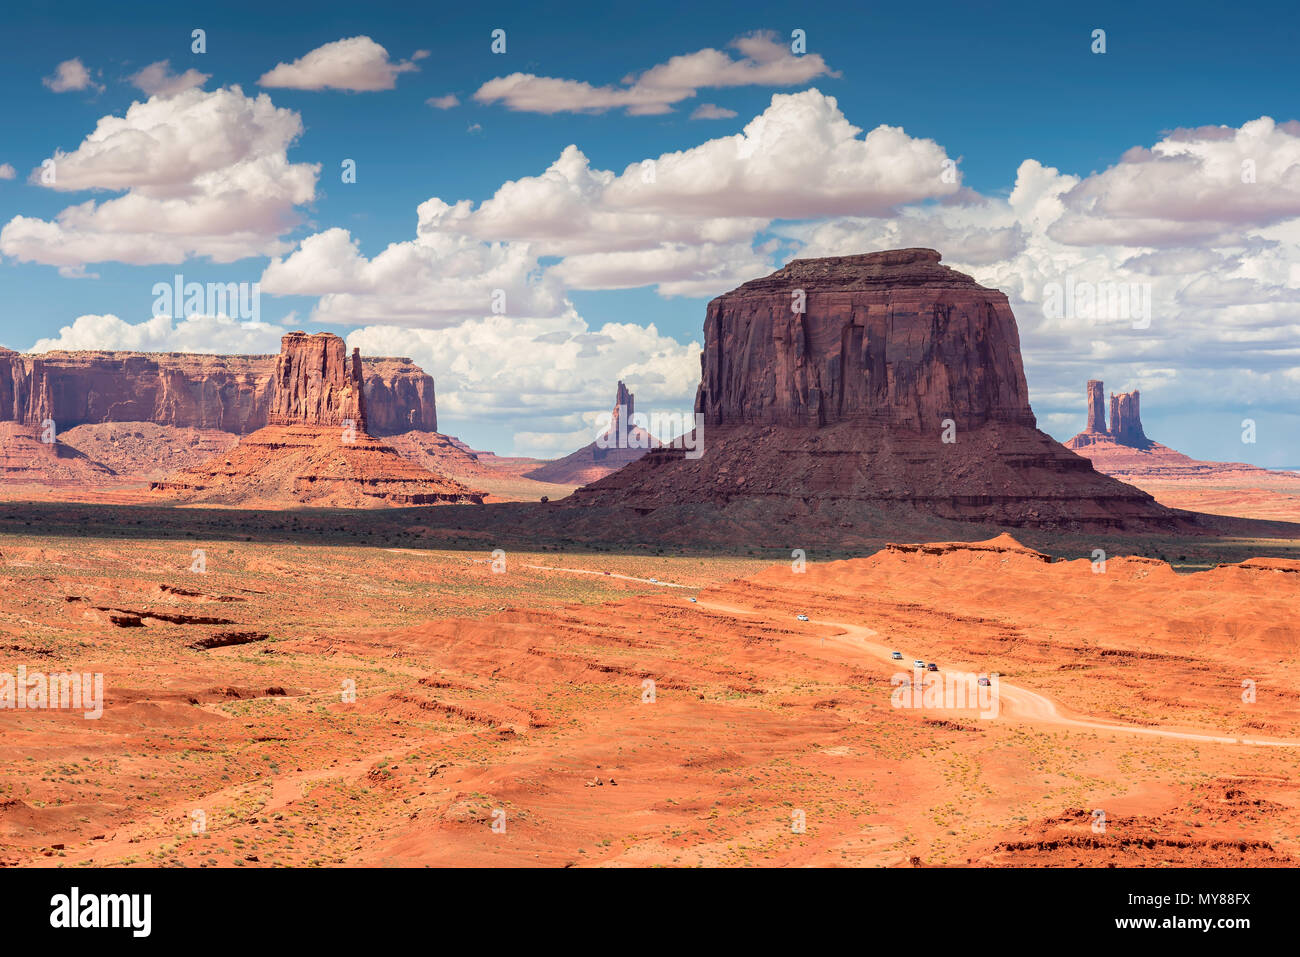 Arizona landscape, Monument Valley Navajo Tribal Park, Arizona, USA. Stock Photo